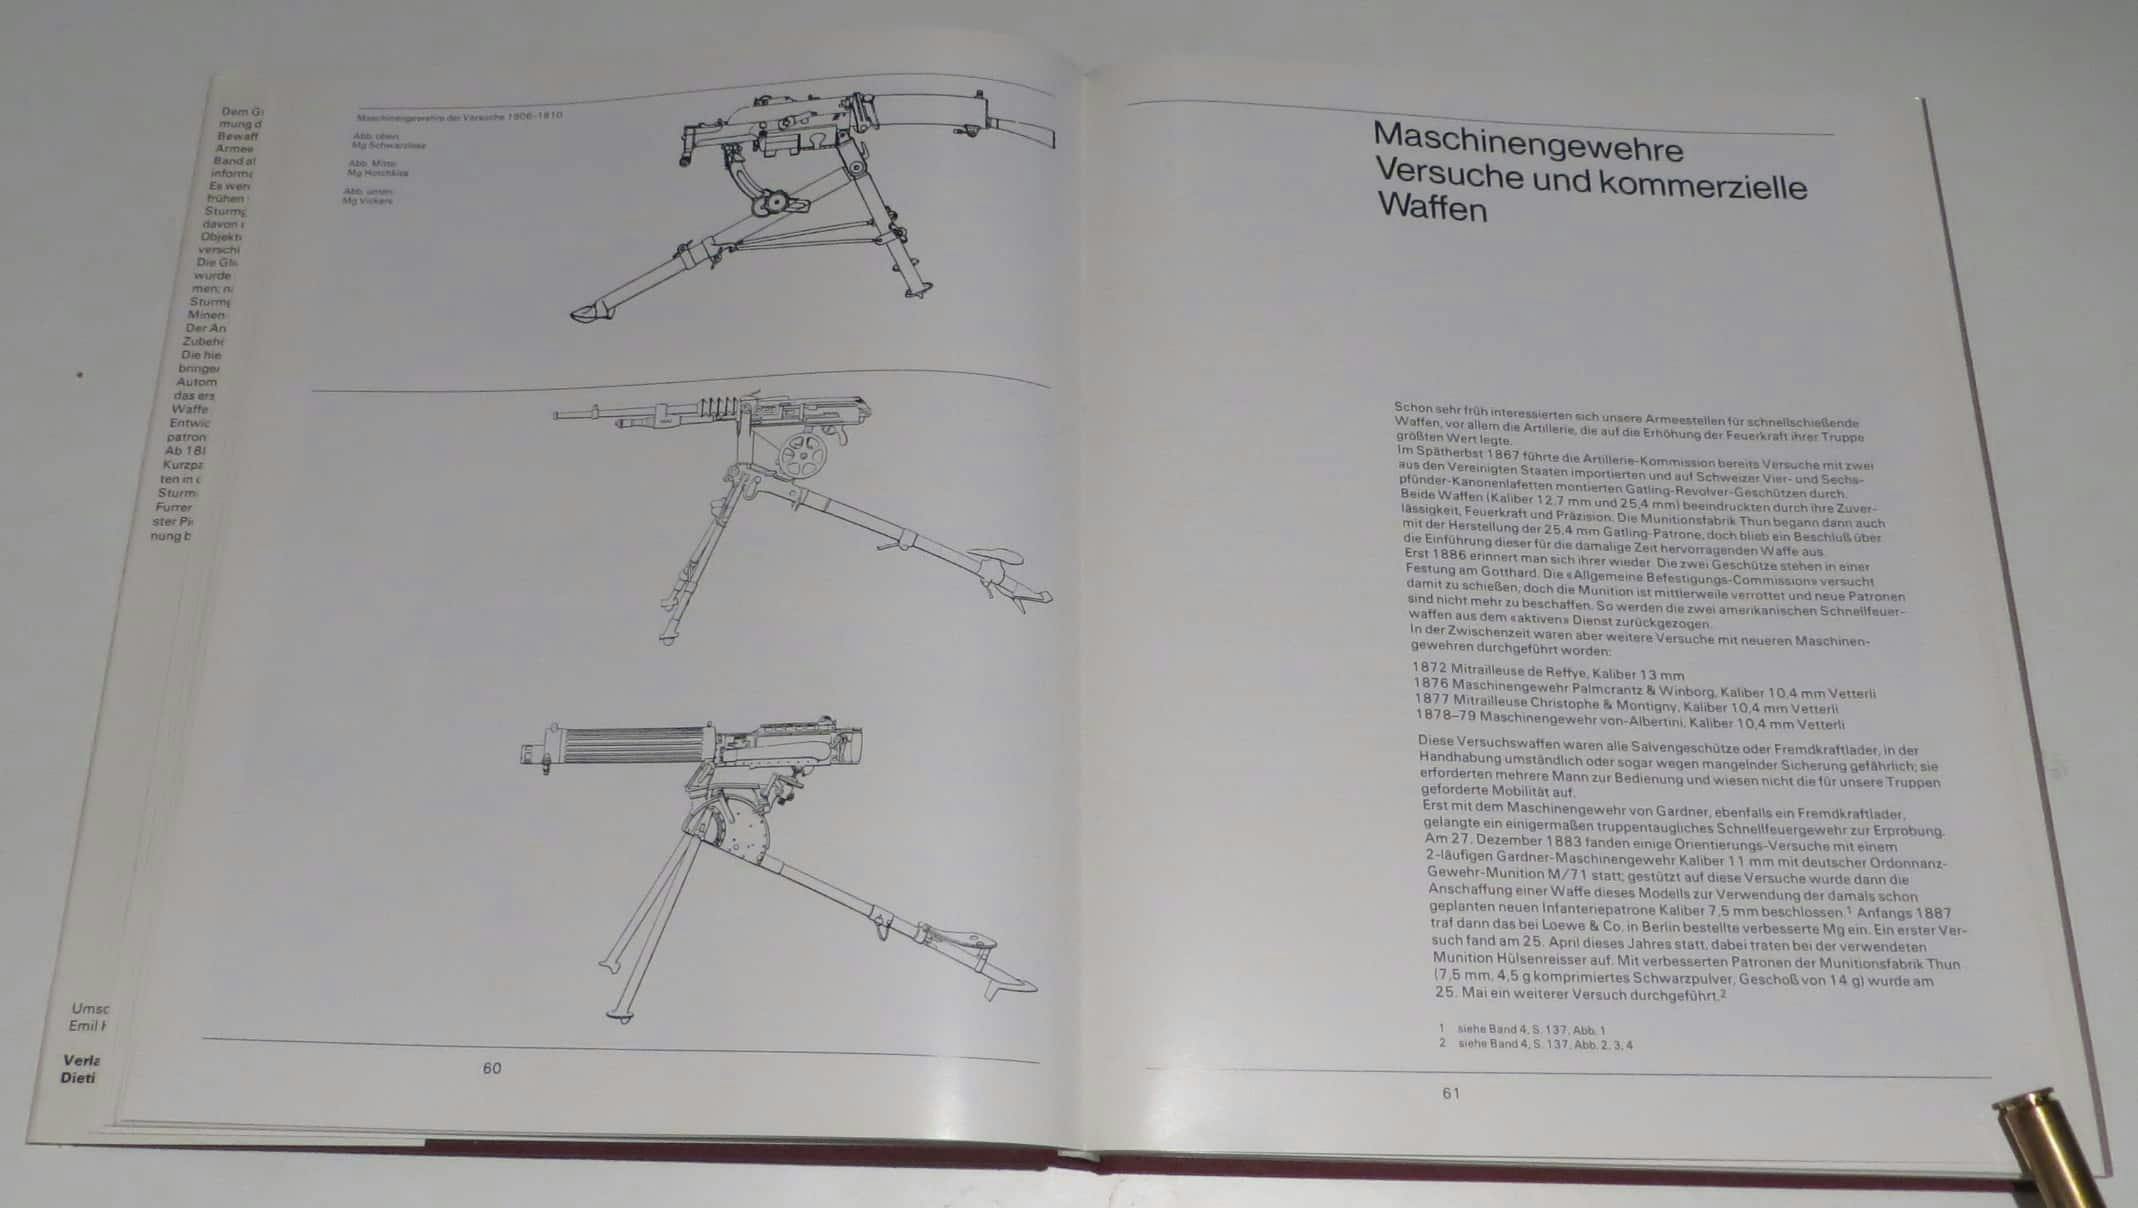 Links bilden technische Zeichnungen der Schwarzlose-, Hotchkiss- uind Vickers Maschinengewehre die Überleitung zu den Versuchen und kommerziellen Waffen.